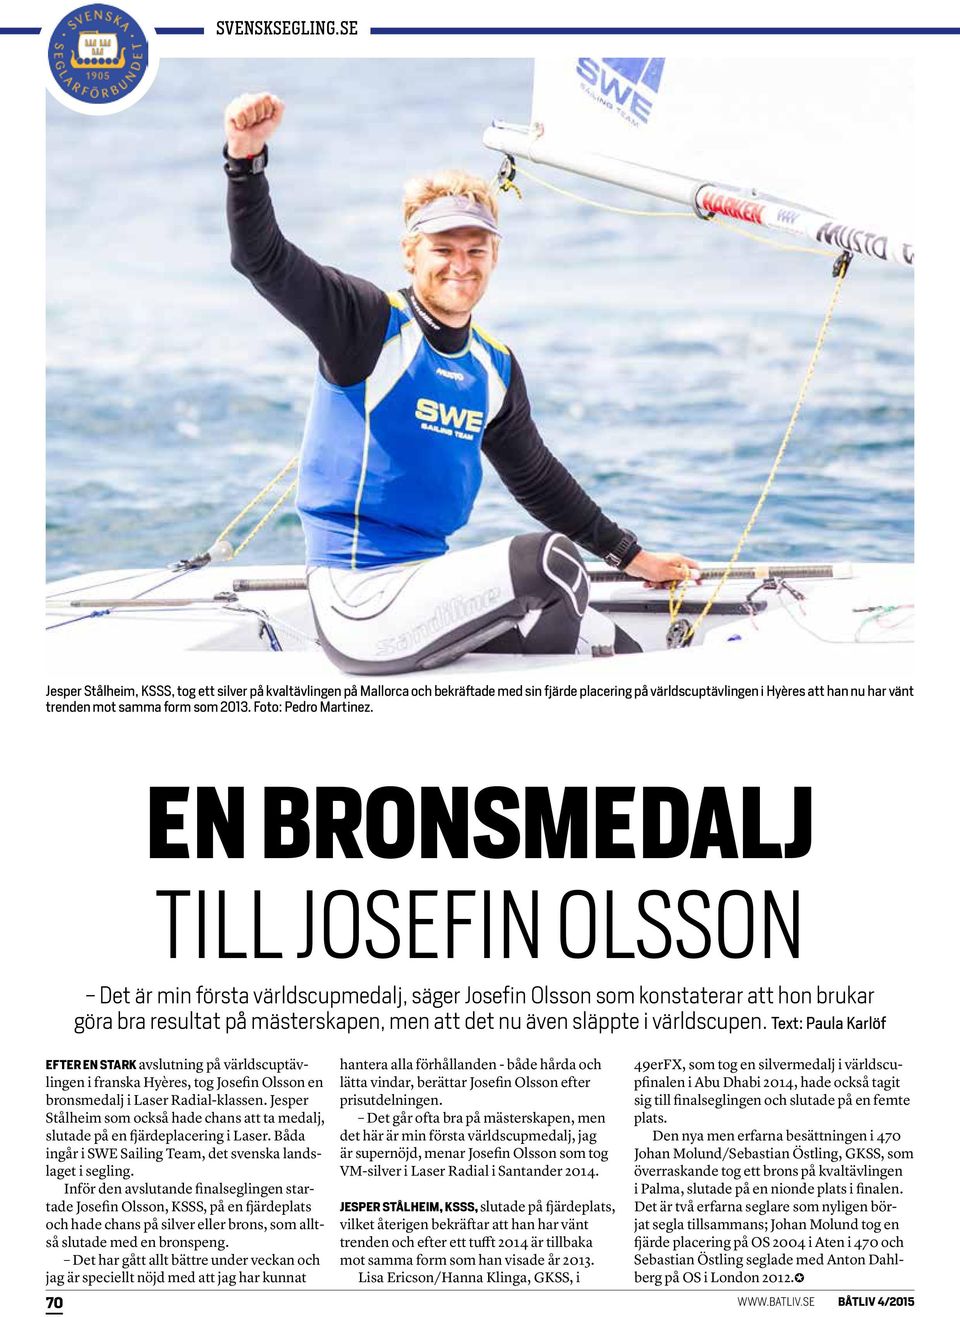 EN BRONSMEDALJ TILL JOSEFIN OLSSON - Det är min första världscupmedalj, säger Josefin Olsson som konstaterar att hon brukar göra bra resultat på mästerskapen, men att det nu även släppte i